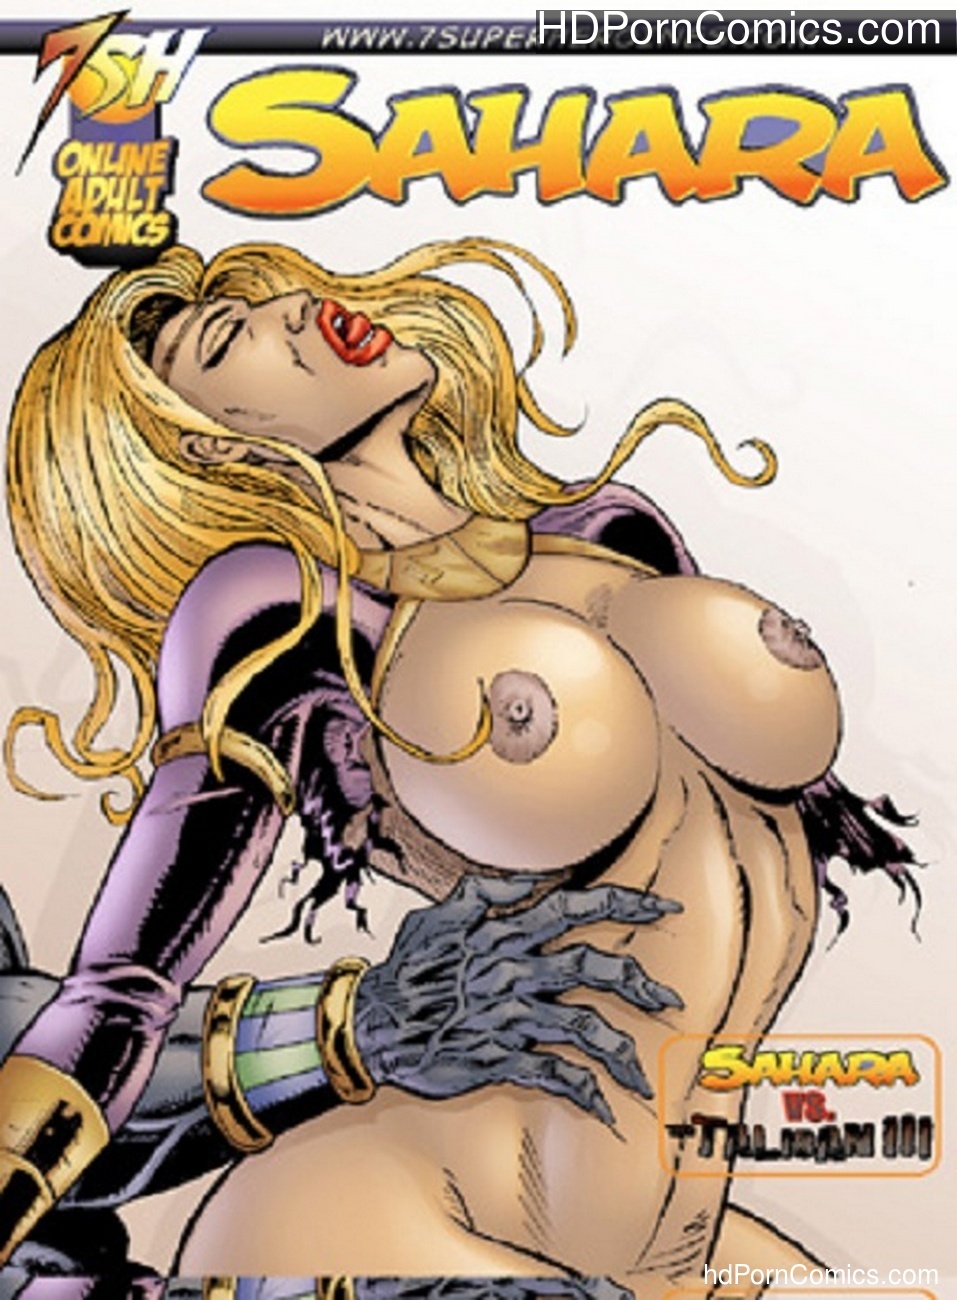 Hot Sex In Taliban Free Download - Sahara vs Taliban 3 Sex Comic - HD Porn Comics